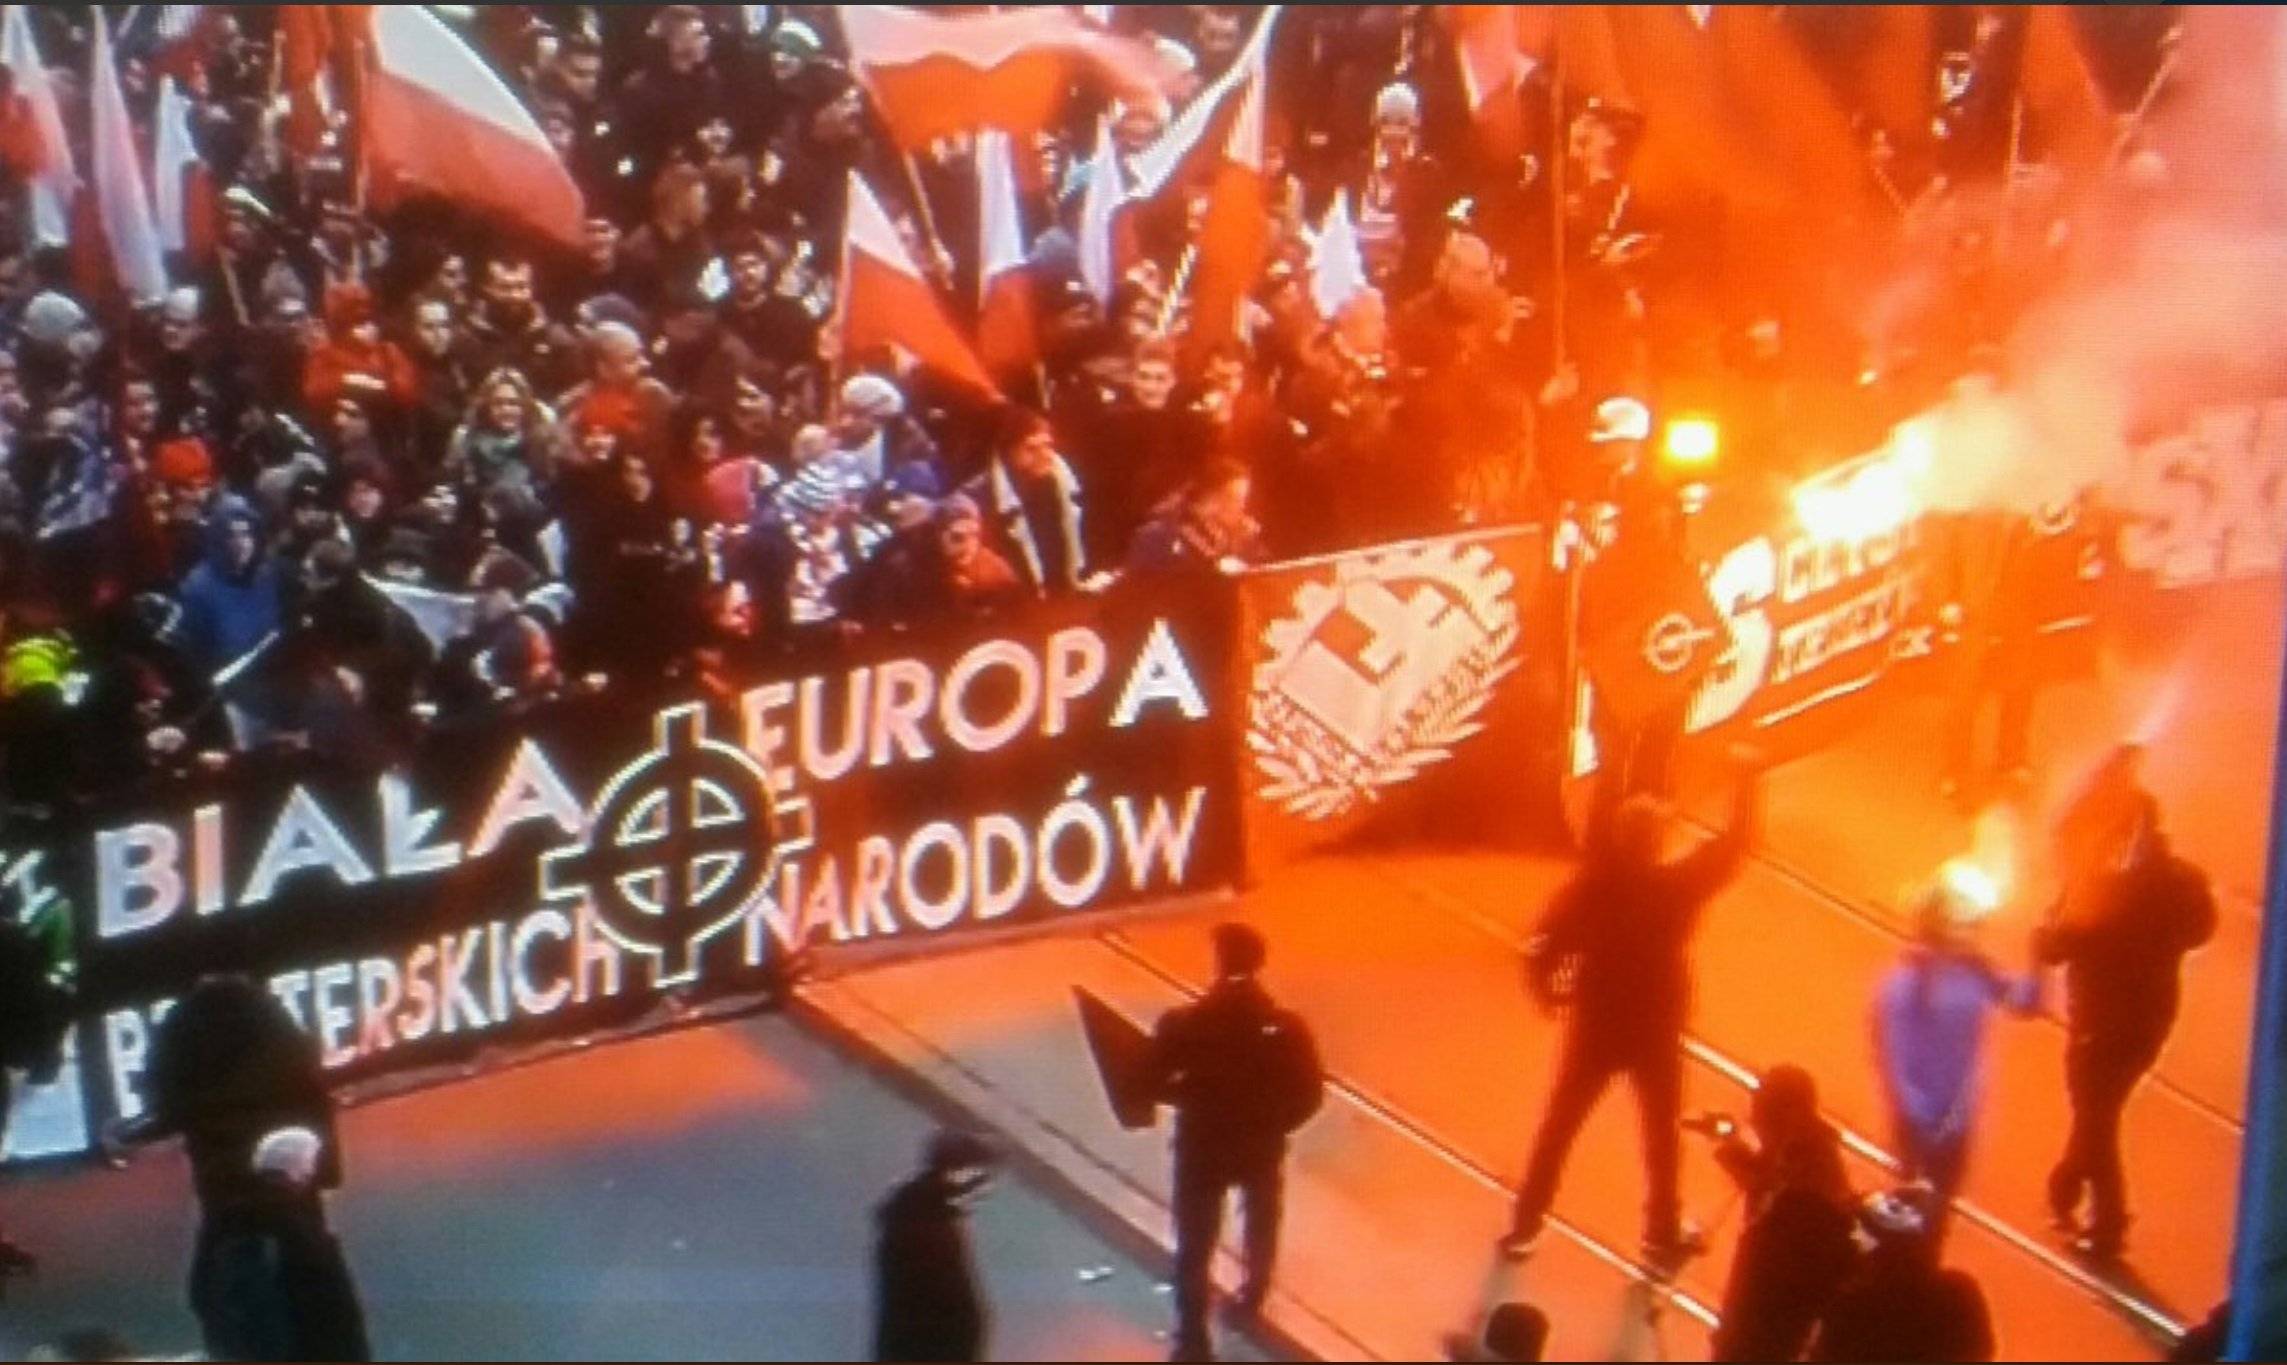 Transparent z napisem "Biała Europa braterskich narodów" i krzyżem celtyckim - symbolem wyższości białej rasy. Fot. screen